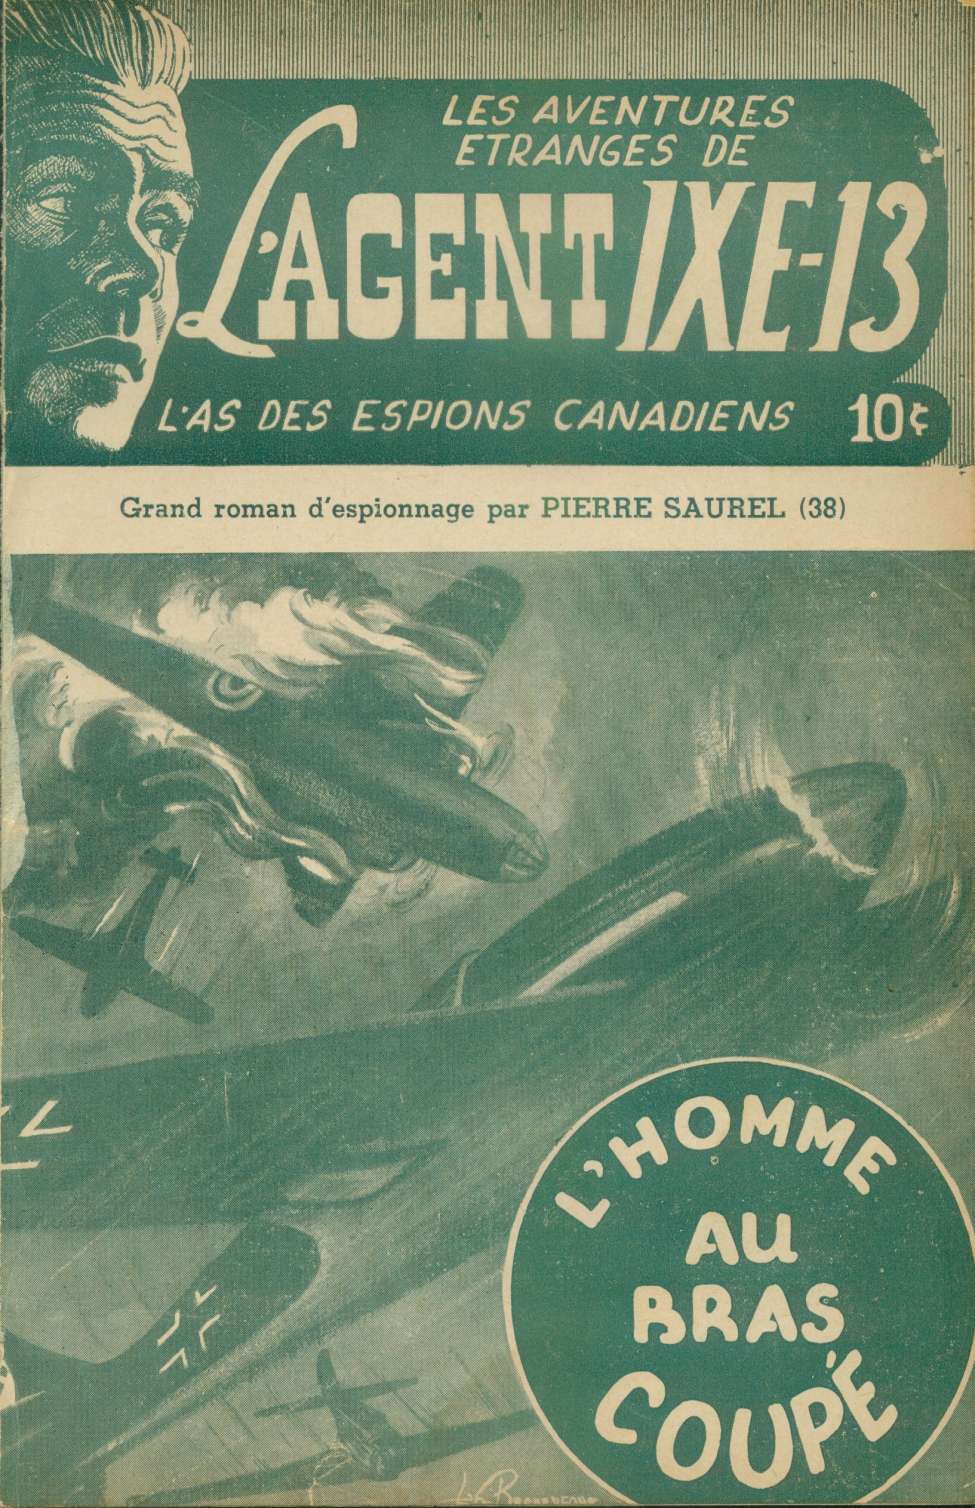 Comic Book Cover For L'Agent IXE-13 v2 38 - L'homme au bras coupé